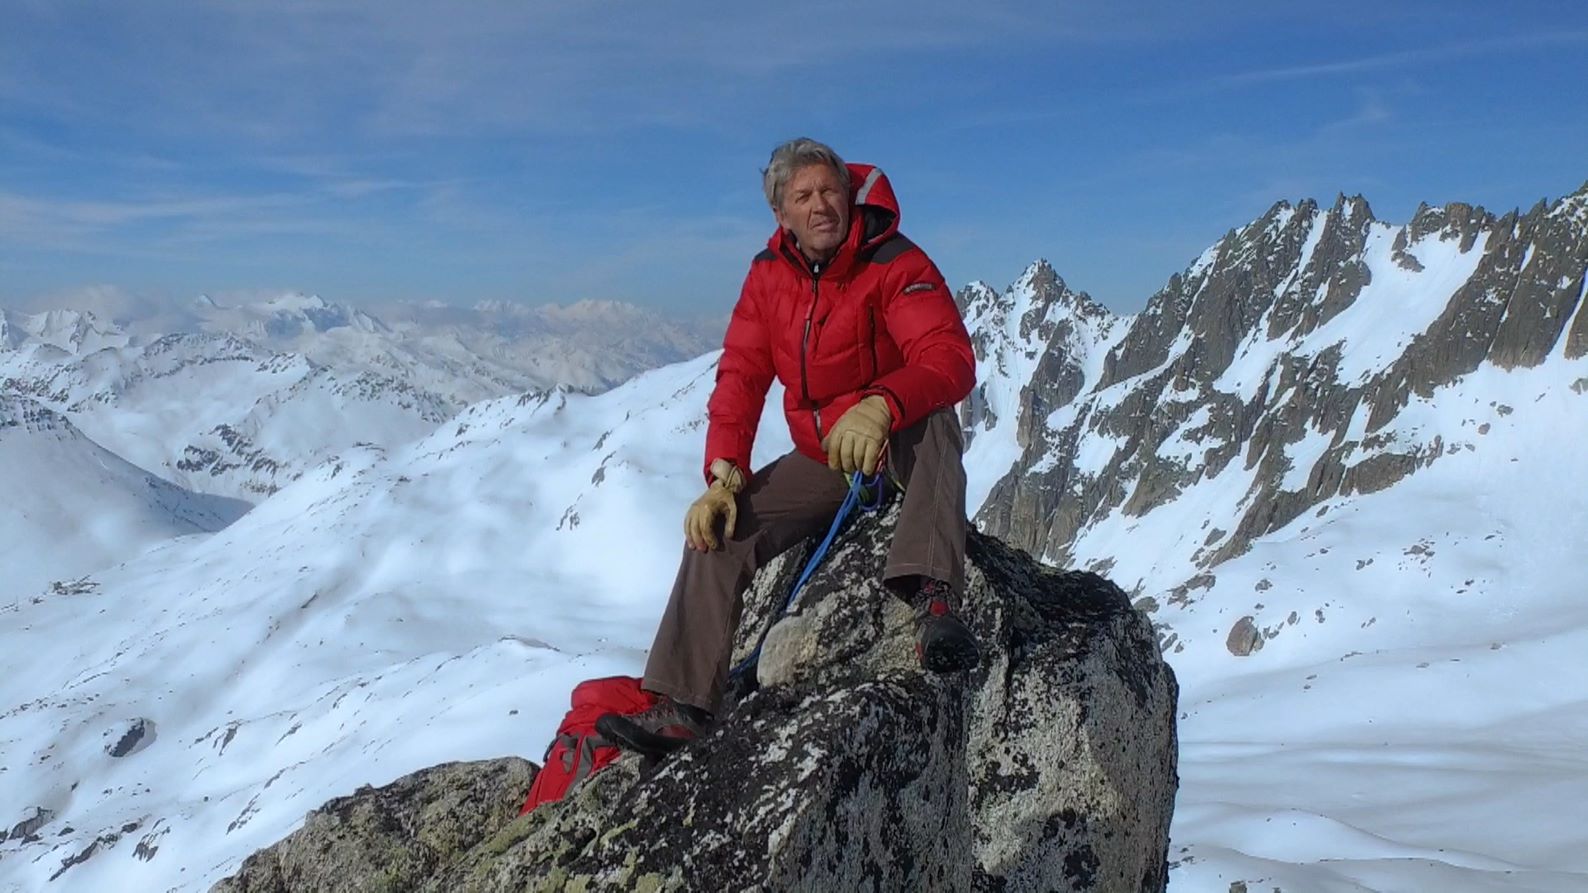 Mann in roter Jacke, der in verschneiten Bergen auf einem Felsen sitzt